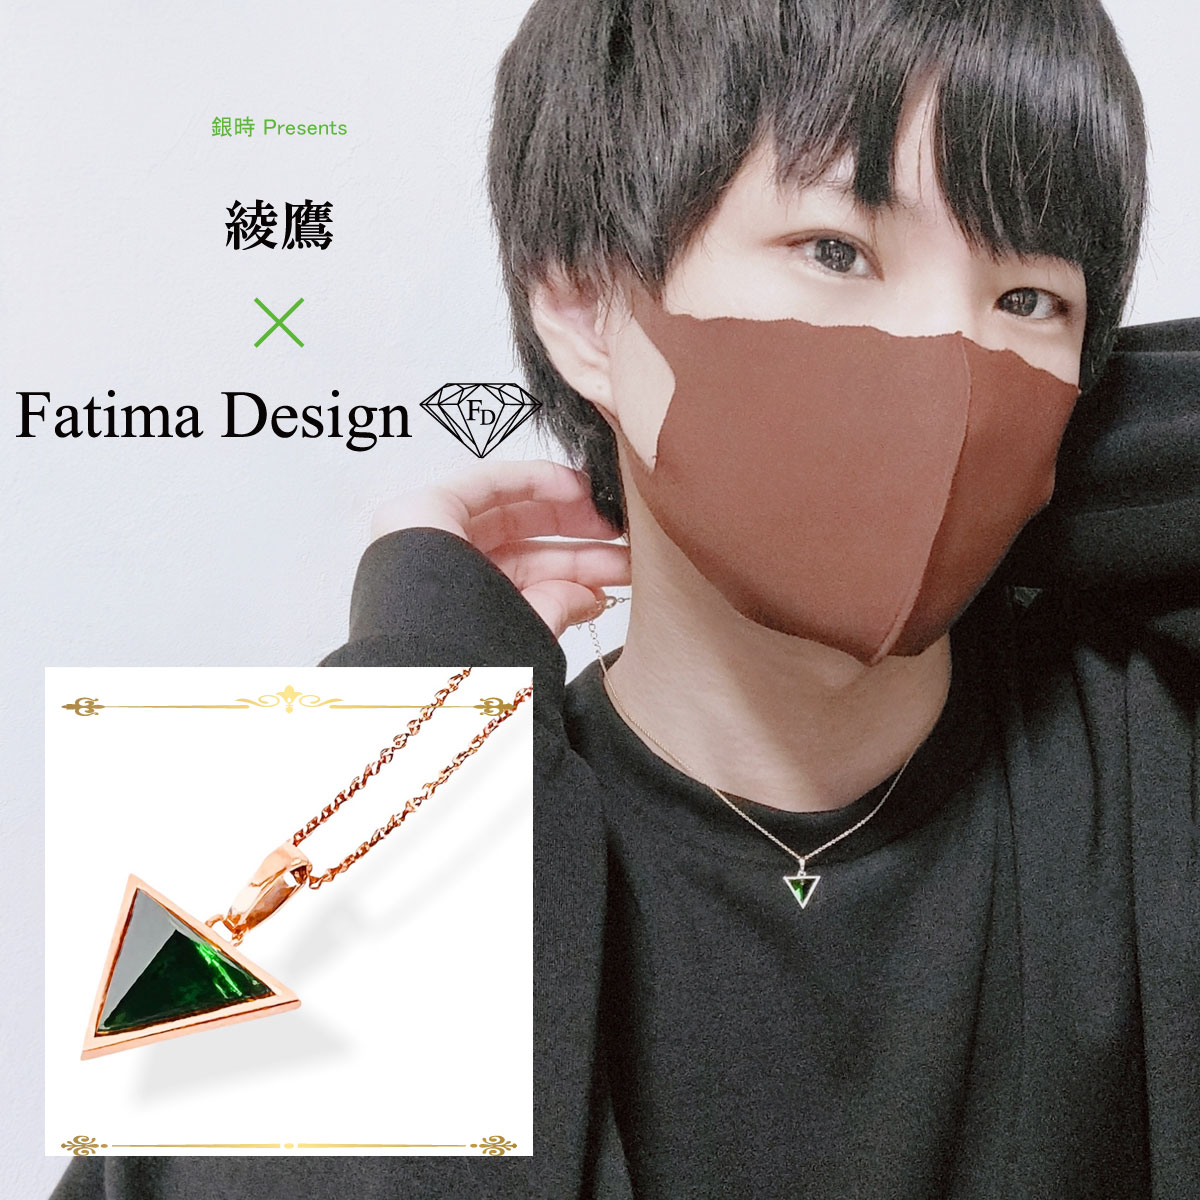 綾鷹×Fatima Design